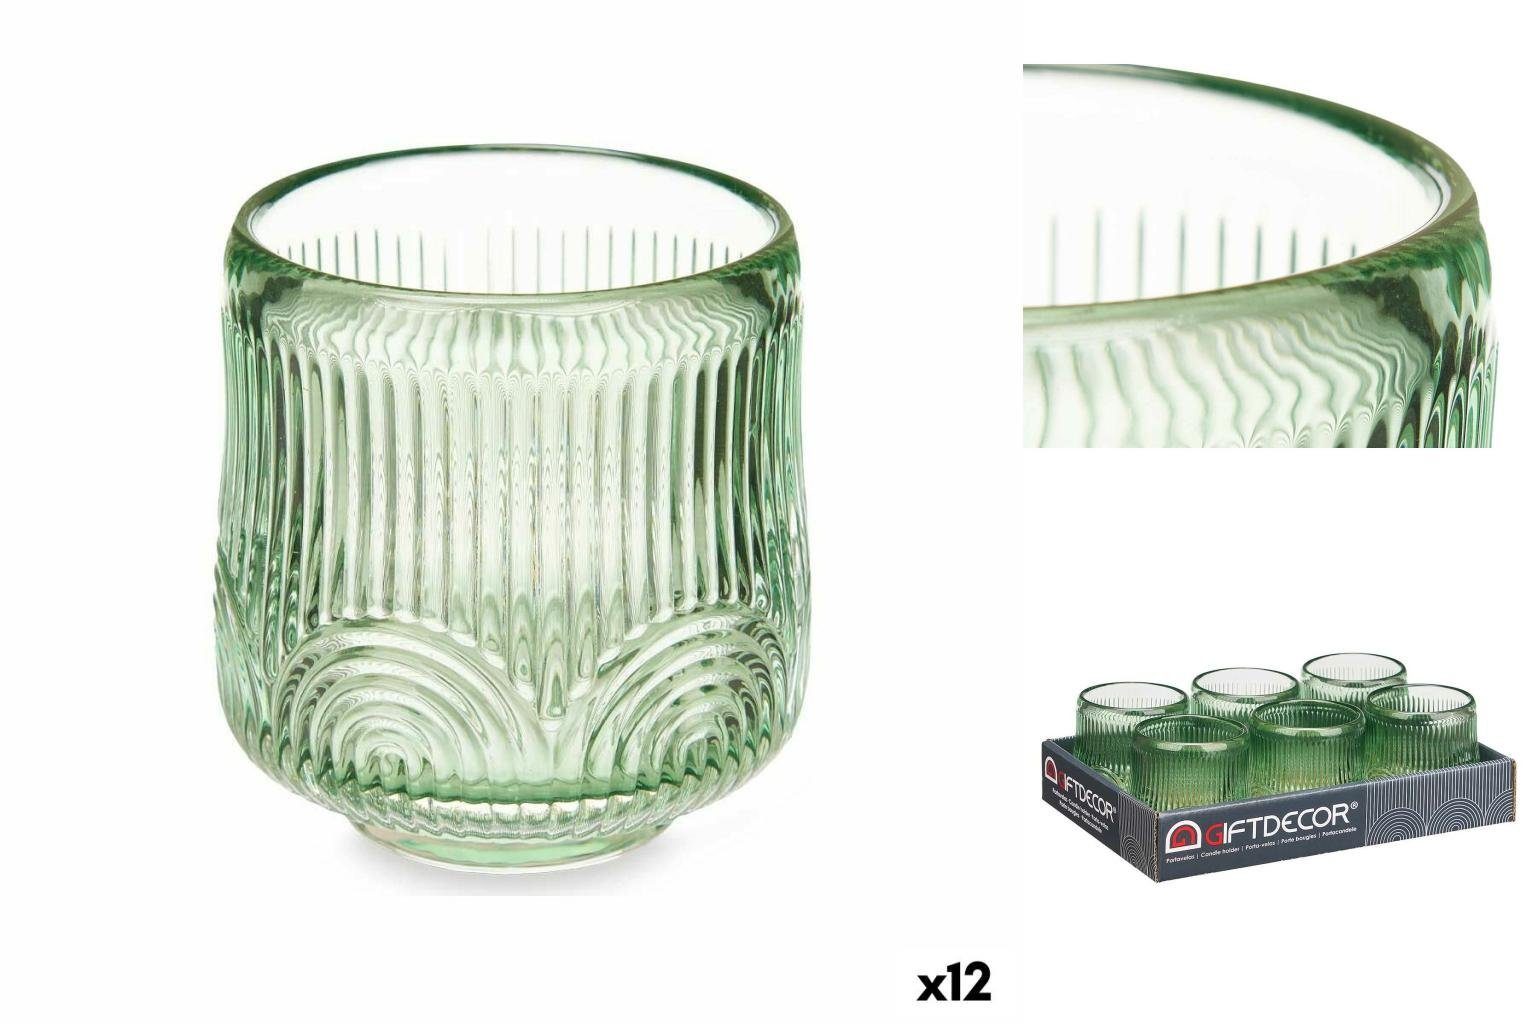 x Windlicht Decor cm Gift 7,5 Kerzenschale Glas 7,8 7,5 grün x Stück 12 Streifen